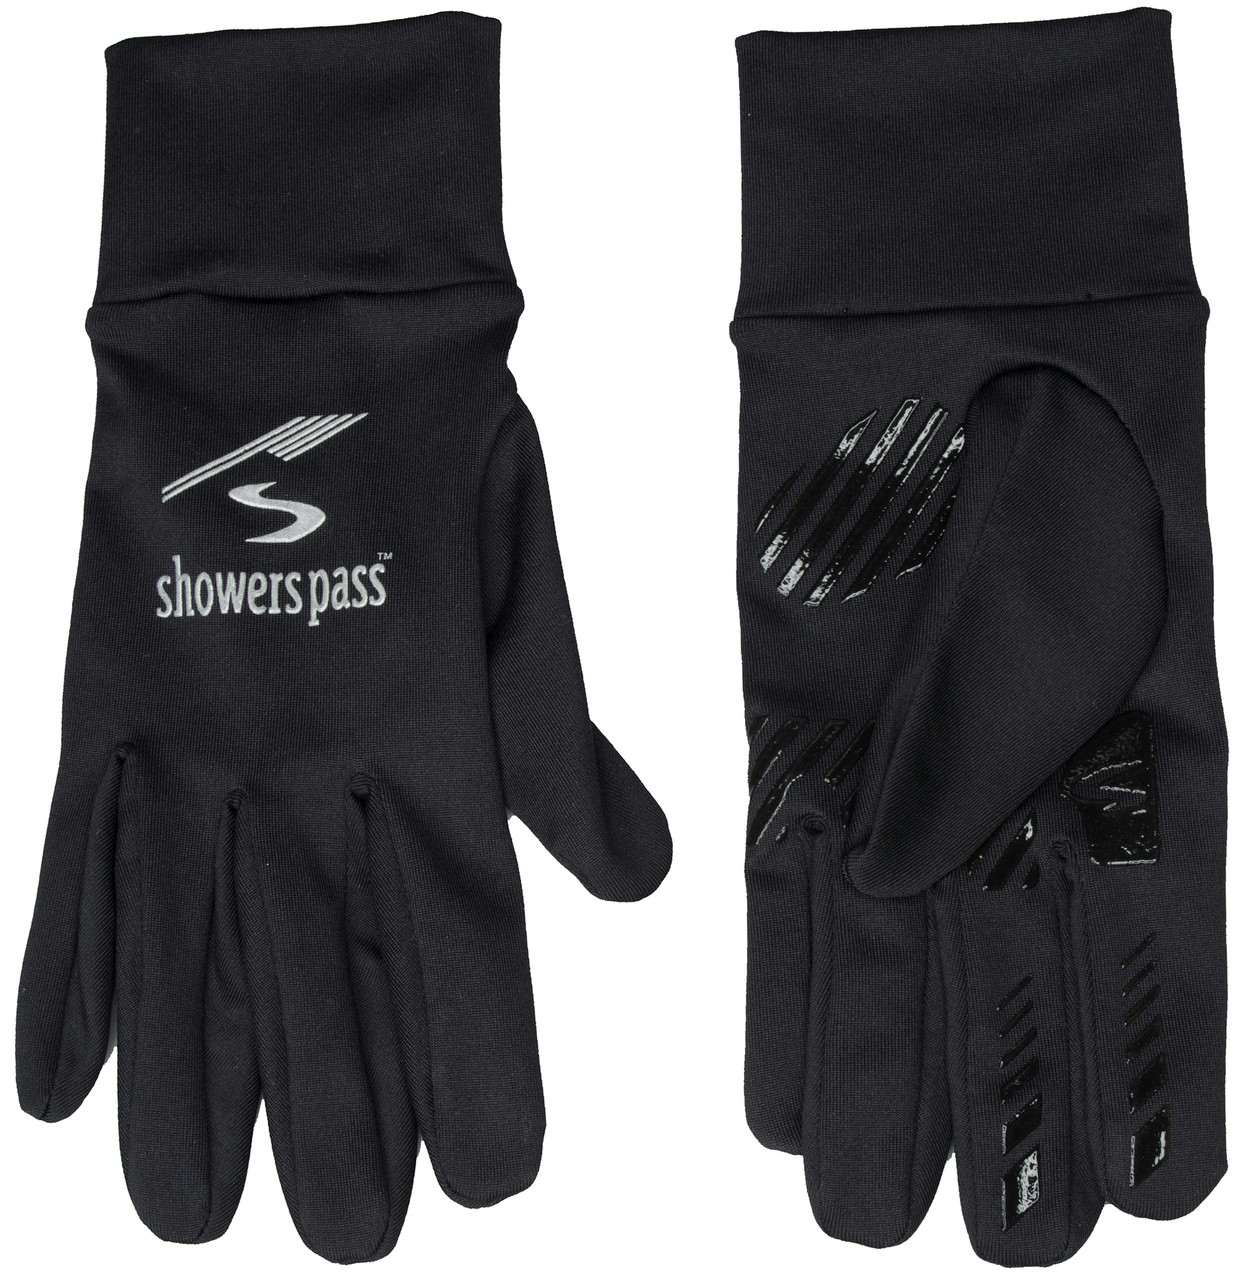 Liner Glove Black